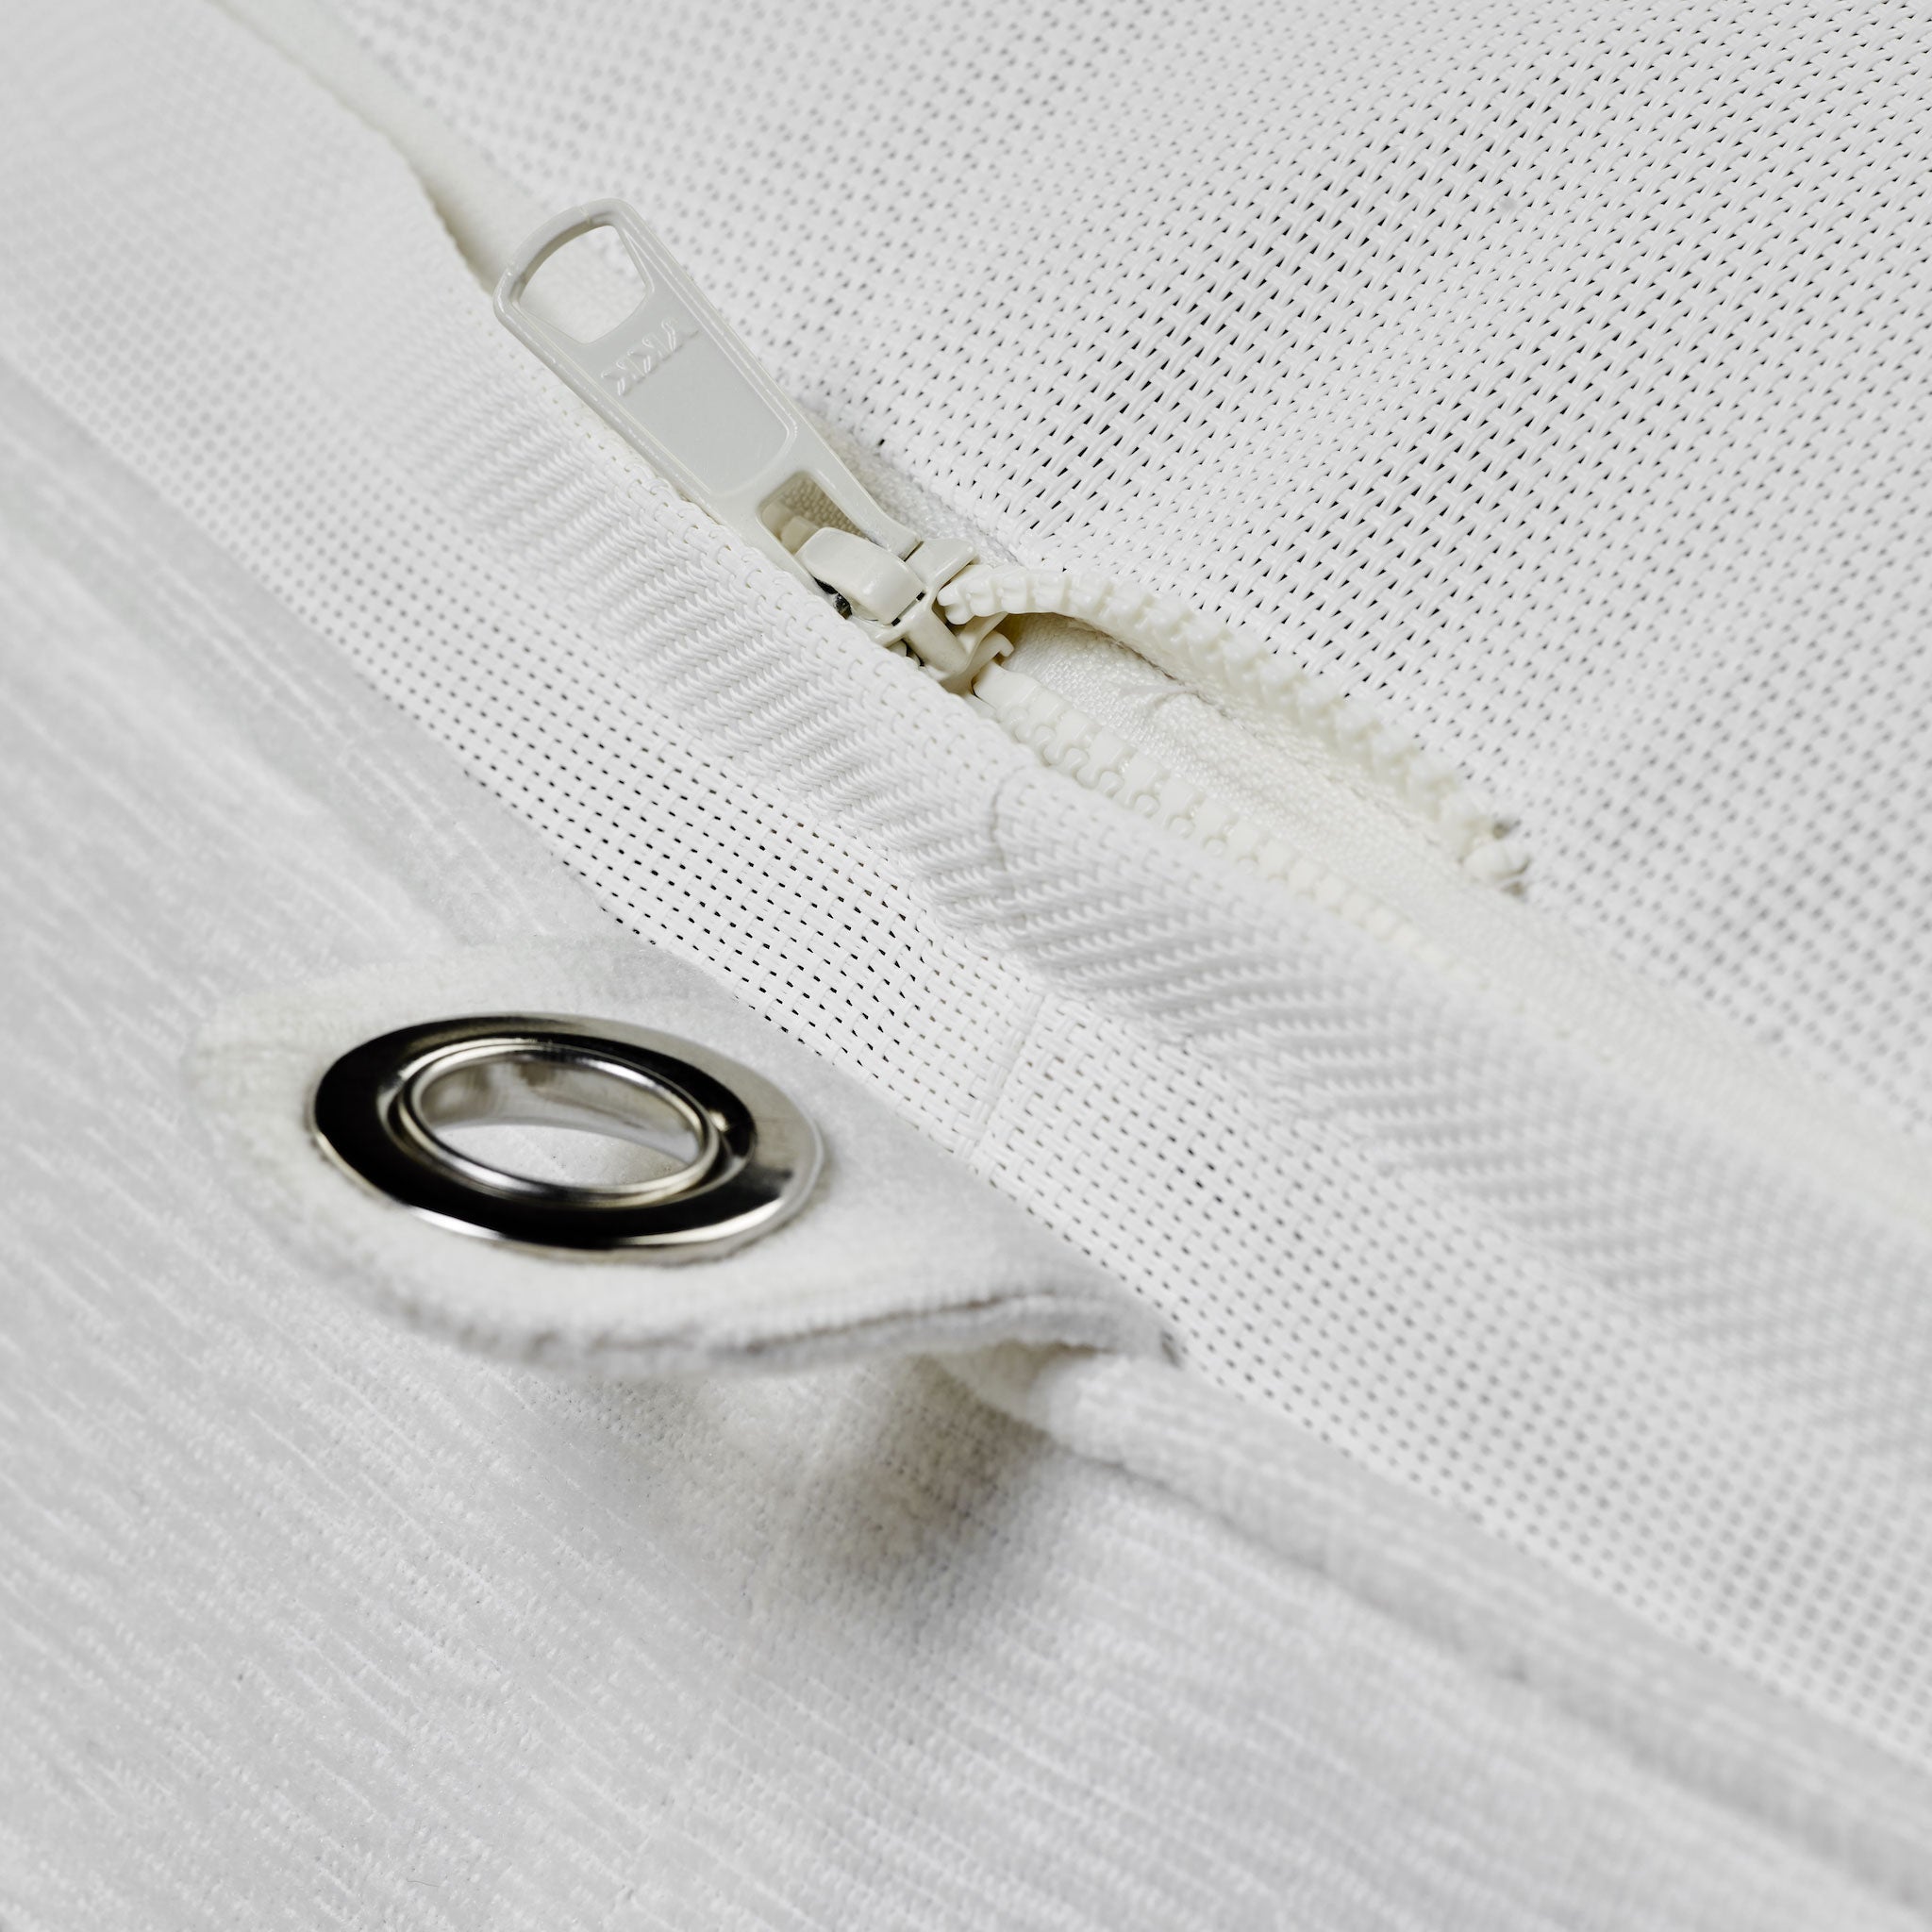 Flotteur de piscine de luxe Bague en tissu éponge blanc, avec des œillets en acier inoxydable, une base durable et des fermetures à glissière.